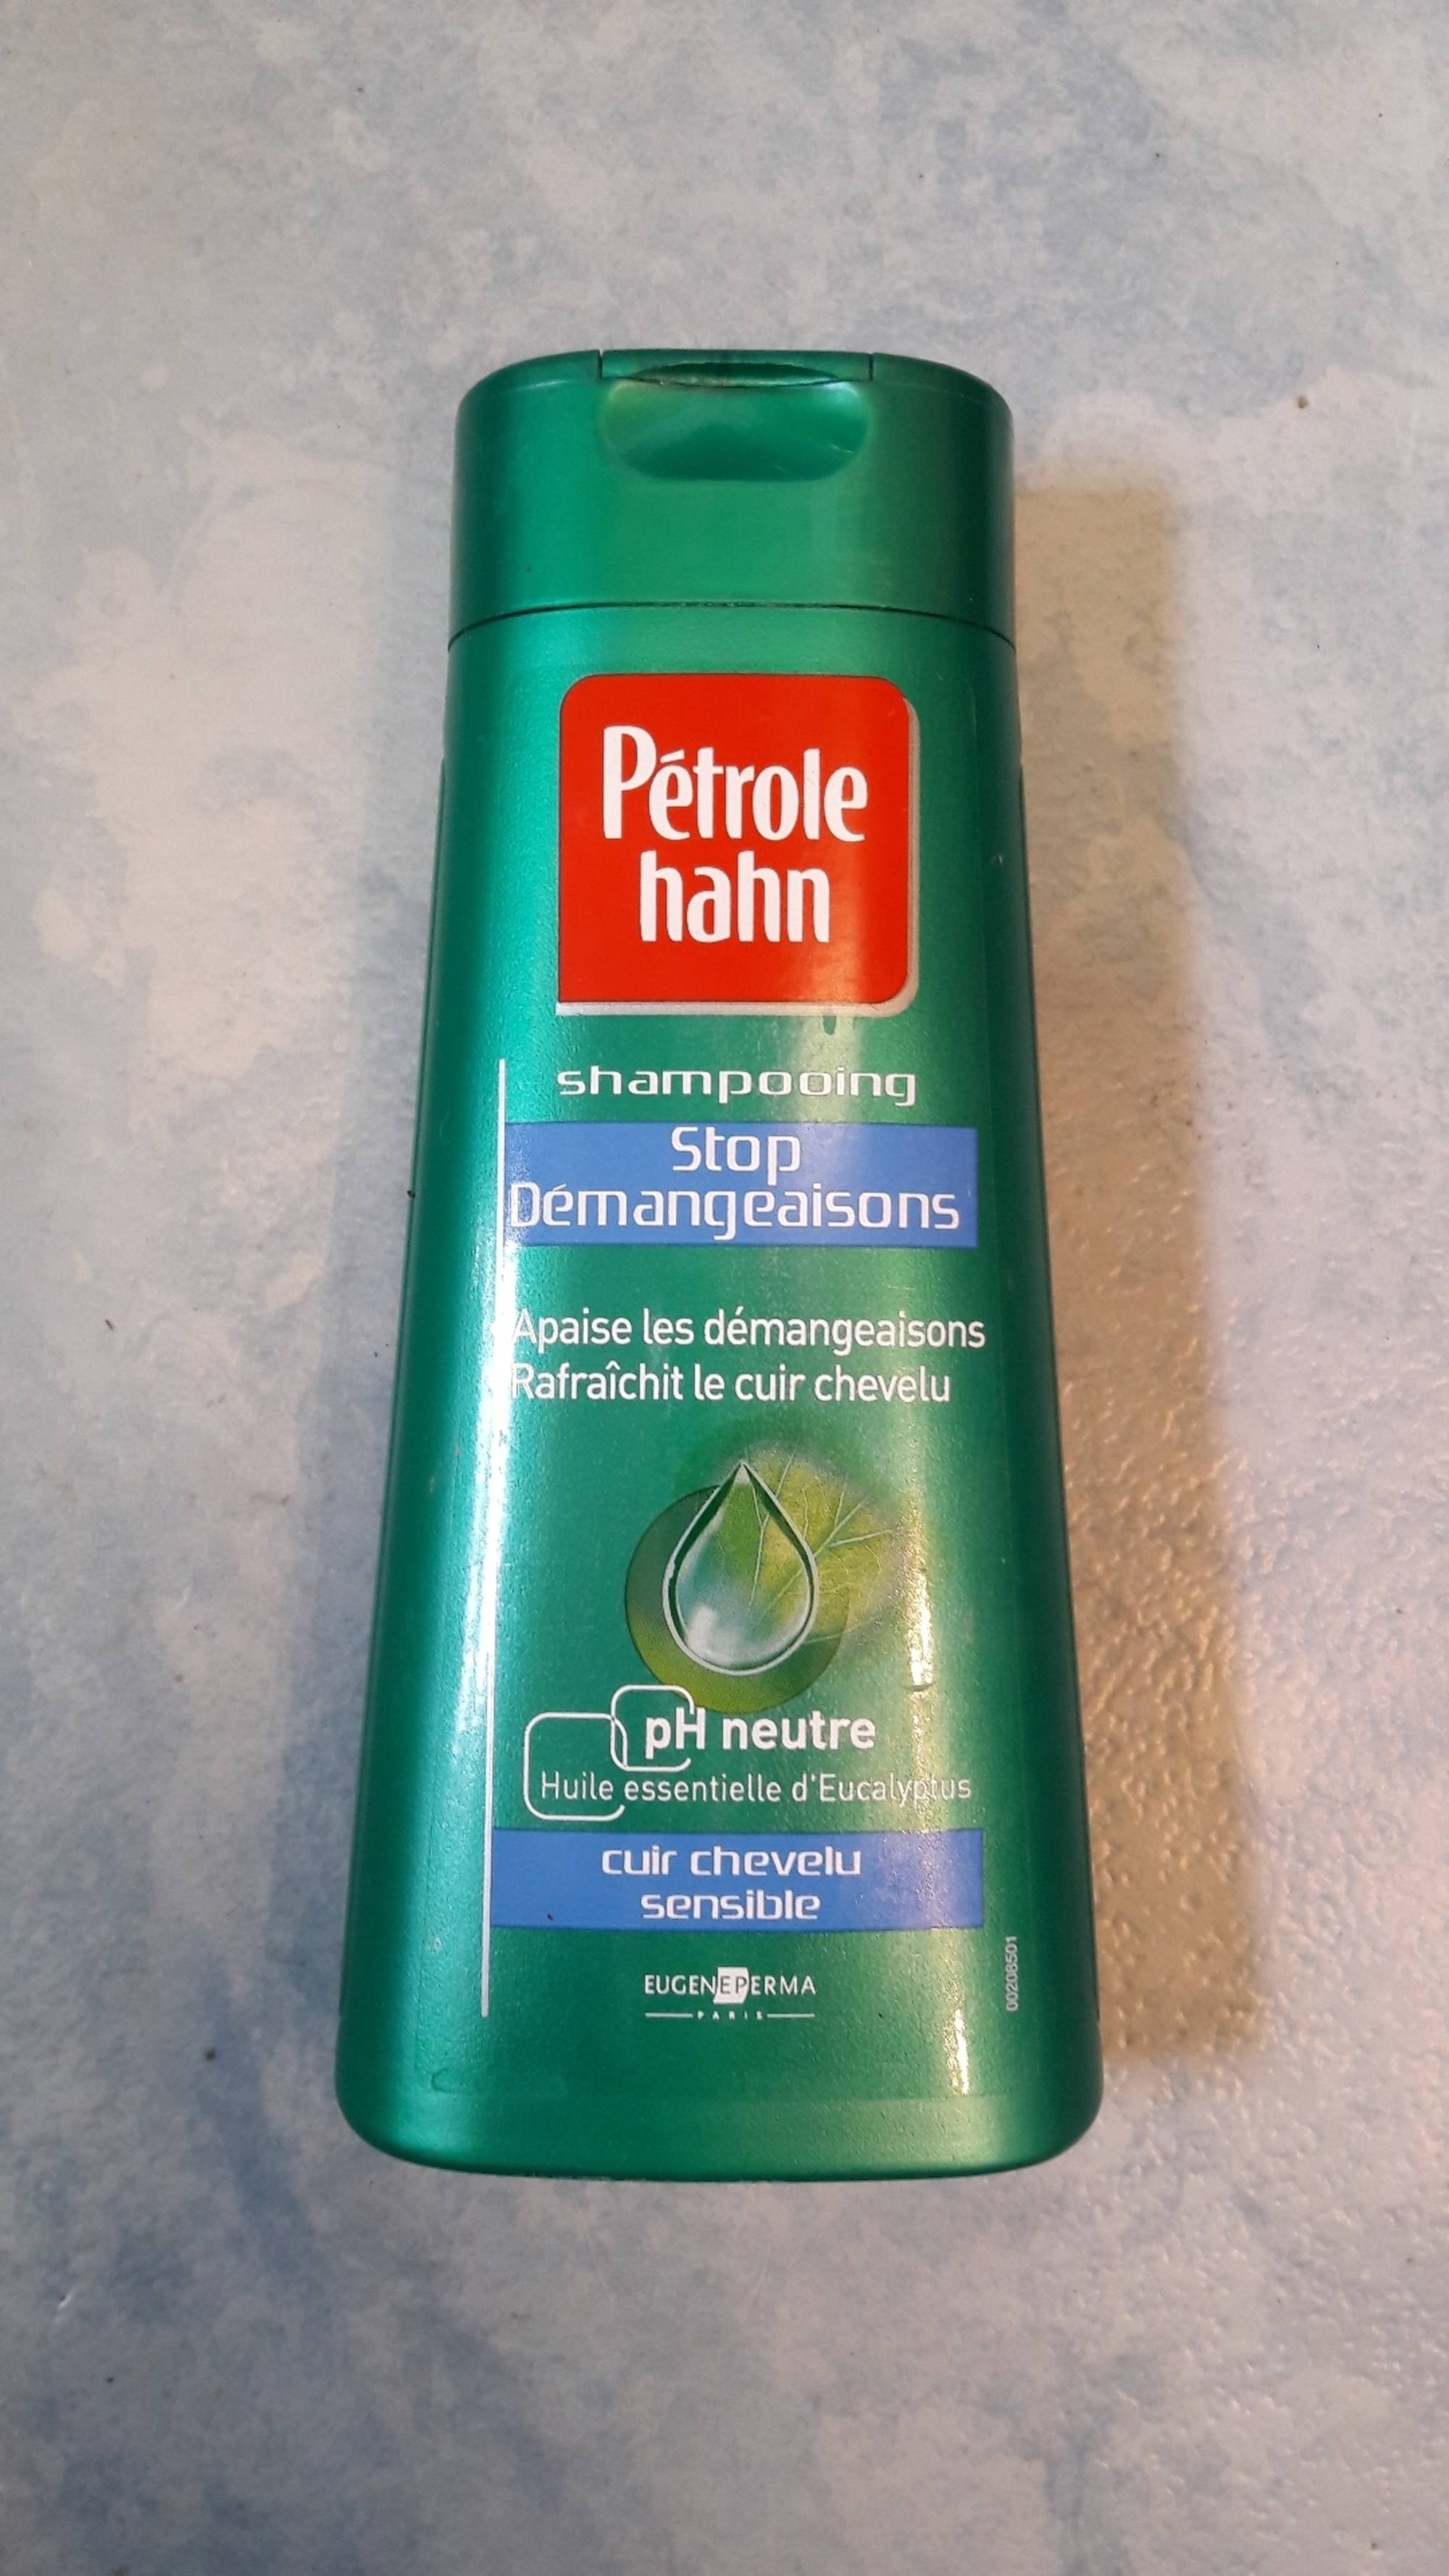 EUGÈNE PERMA - Pétrole hahn - Shampooing stop démangeaisons